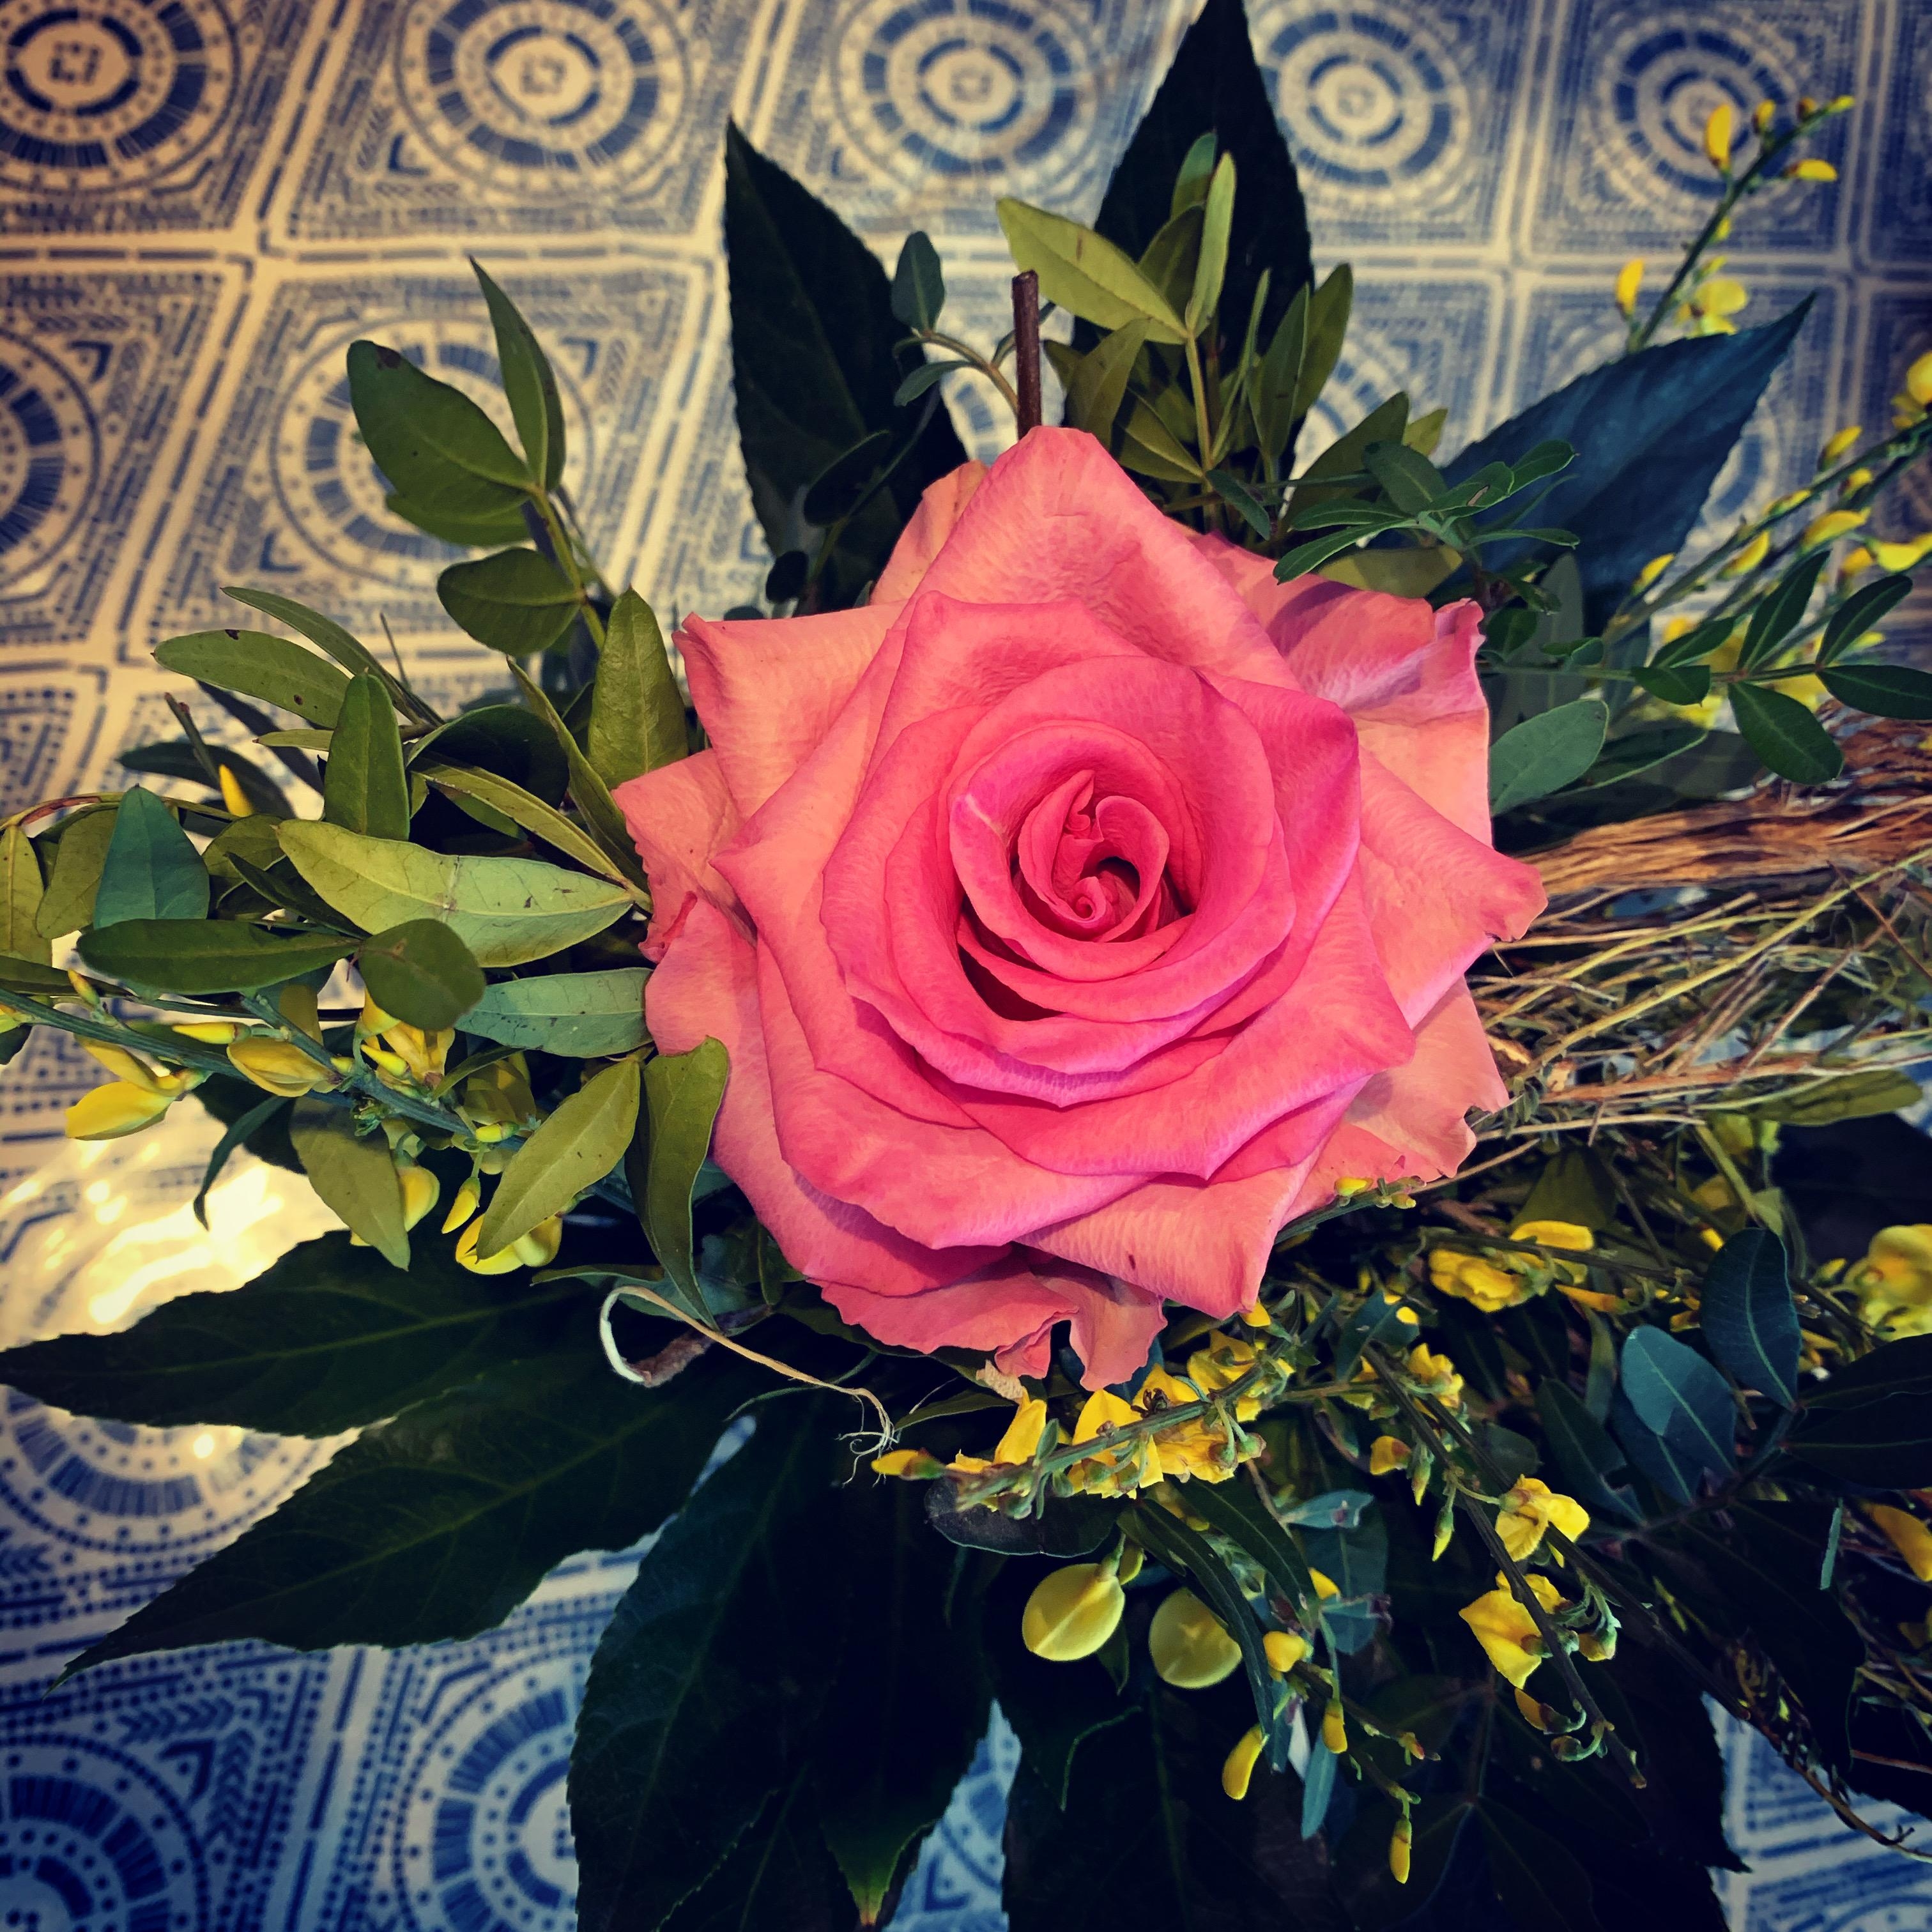 #blumen machen das #leben #bunter  #blumenstrauß #flowerssunday #rose #lieblingstischdecke